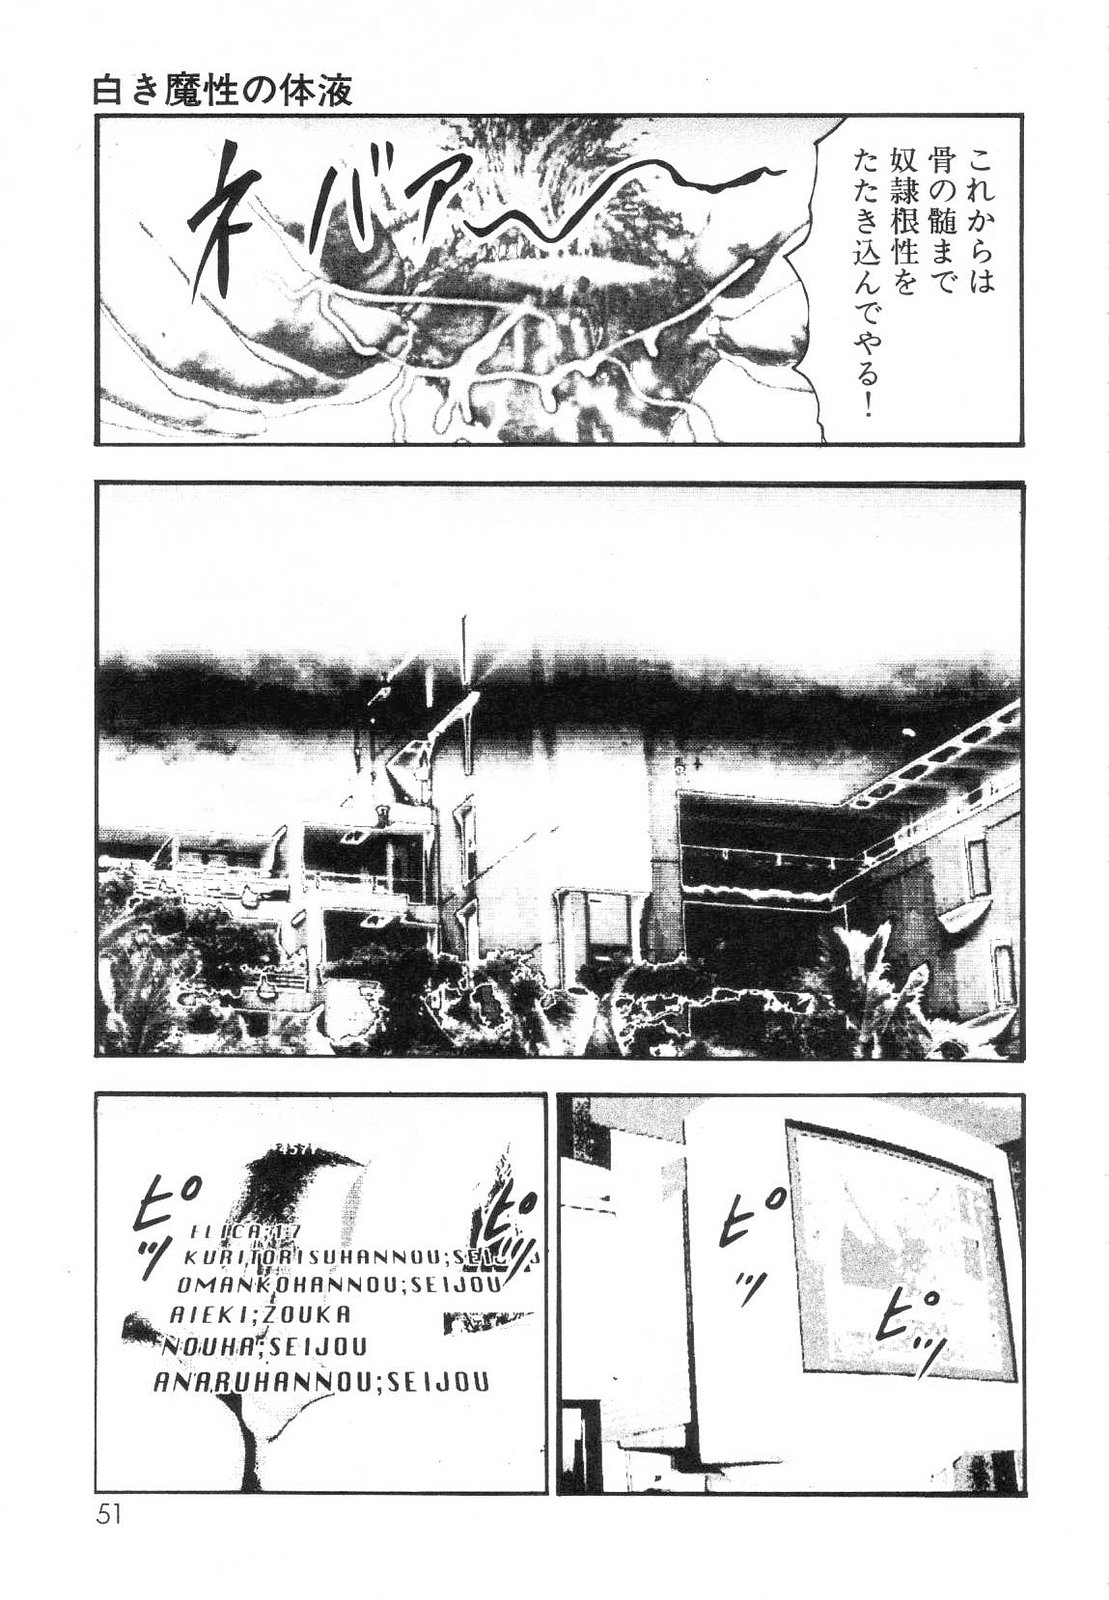 [Sanjou Tomomi] Shiro no Mokushiroku Vol. 7 - Shiiku Ningyou Erika no Shou 52